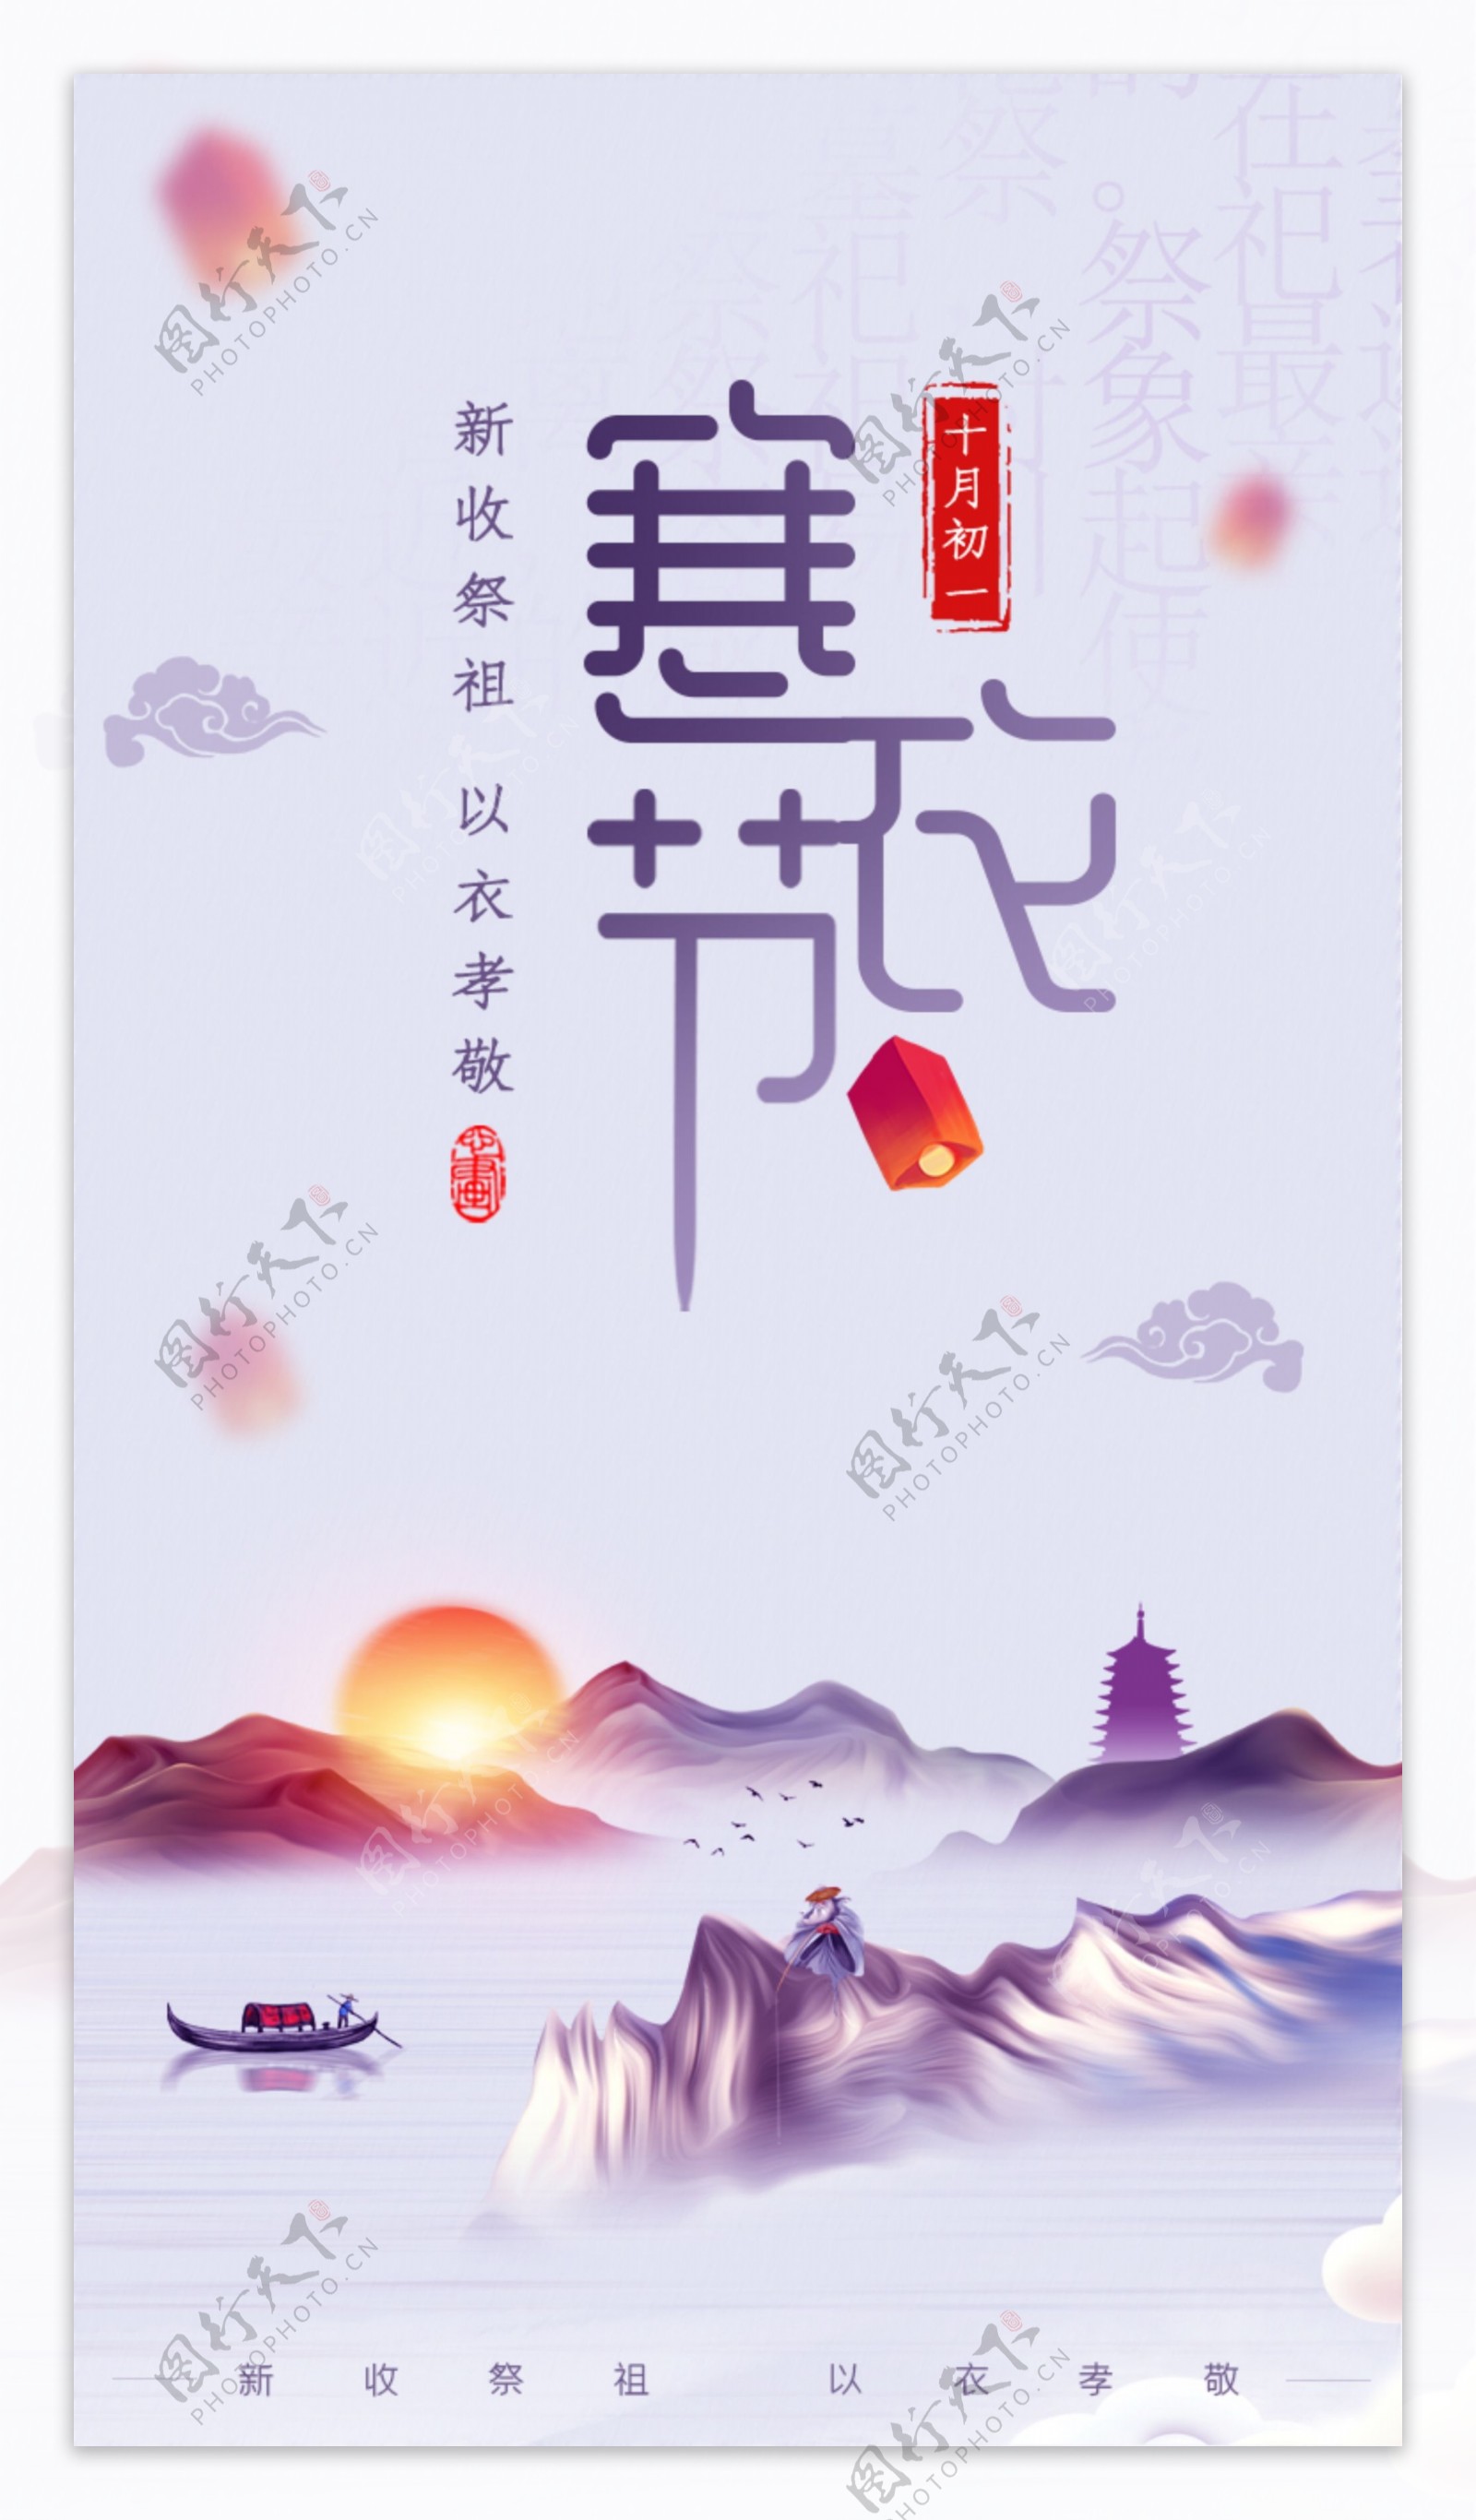 中国二十四节气寒衣节海报启动页